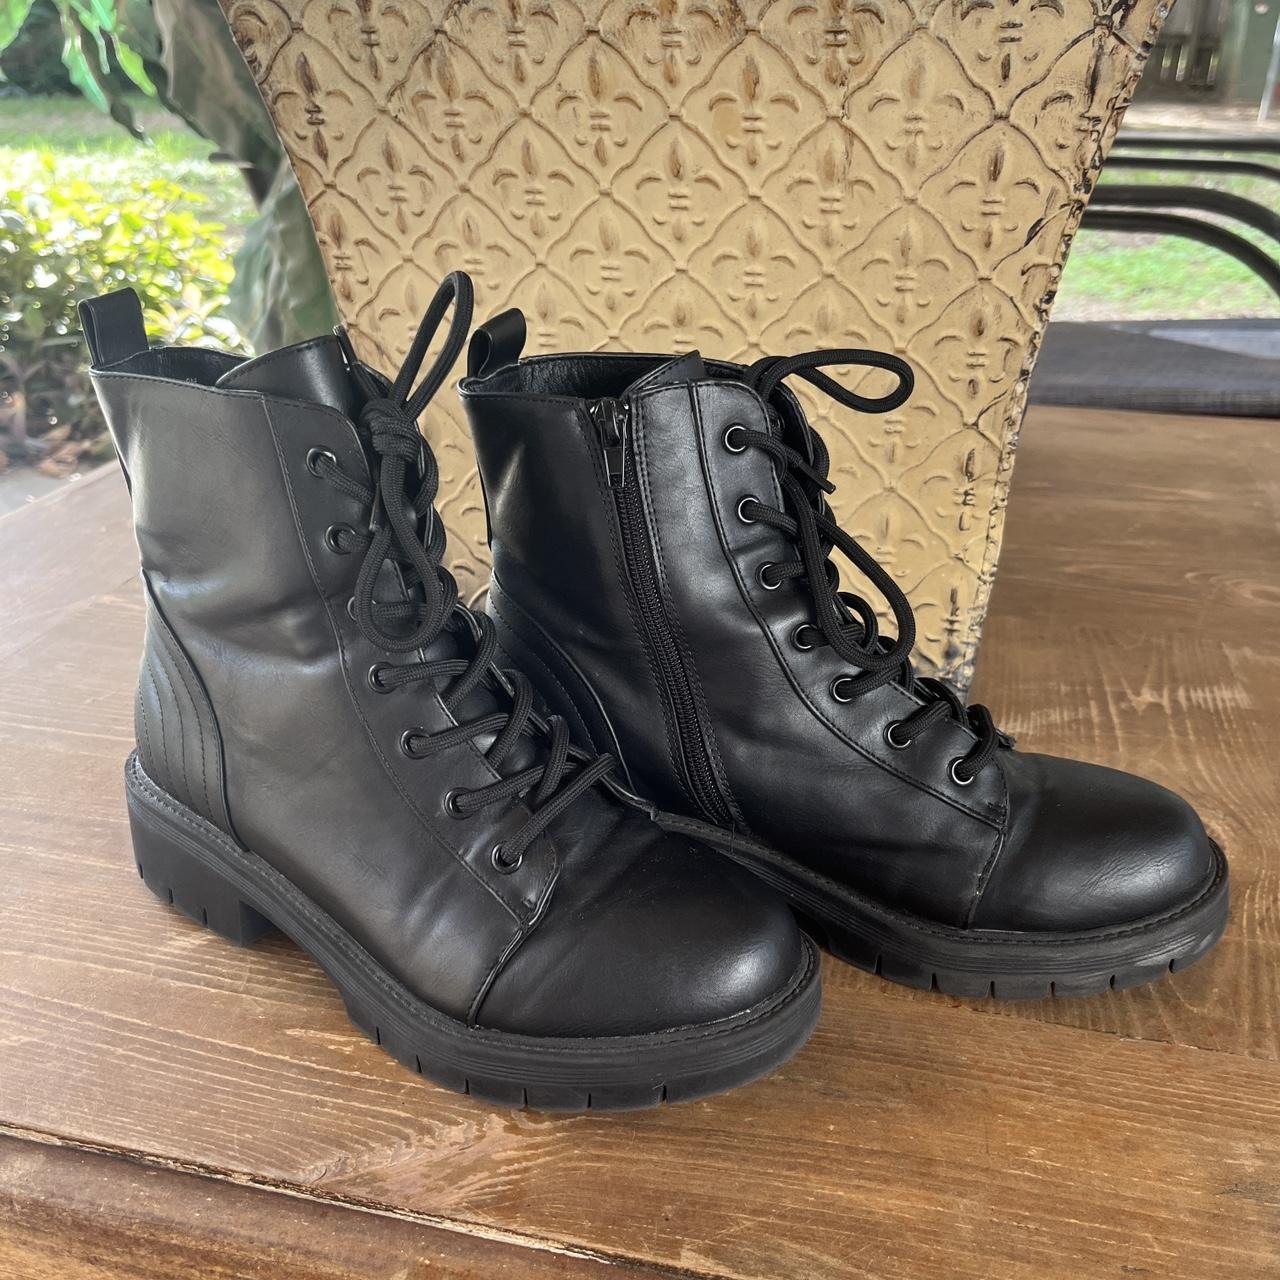 MIA black faux leather lace up combat boots 🧿 Size:... - Depop